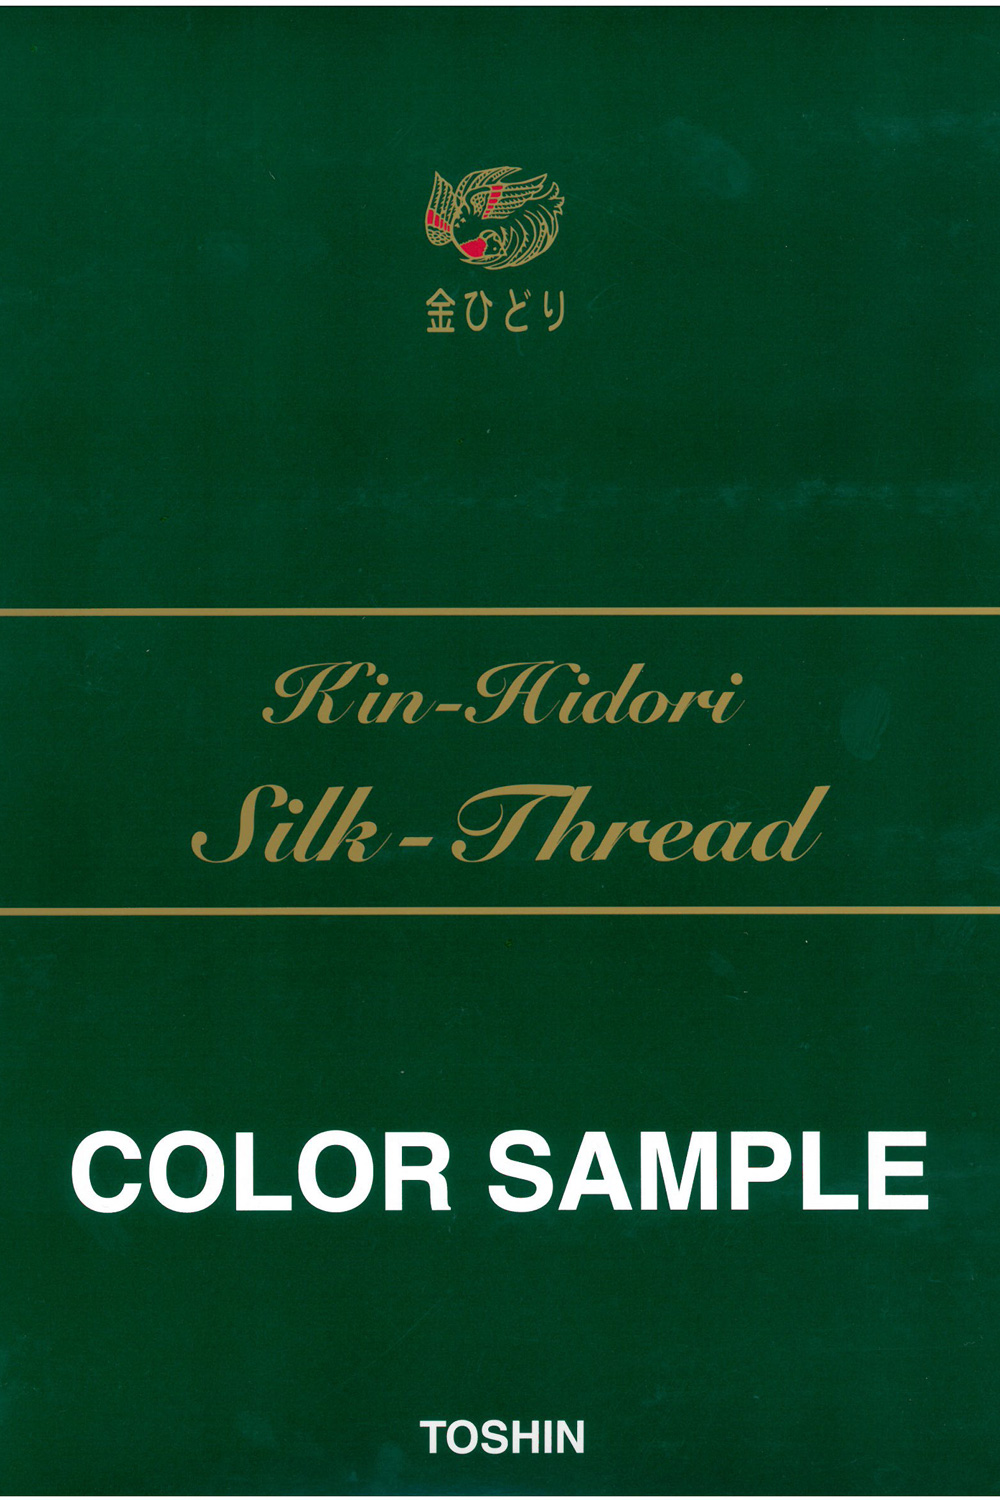 金ひどり 絹ミシン(羽二) Kin-Hidori Silk Sewing Thread TOSHIN